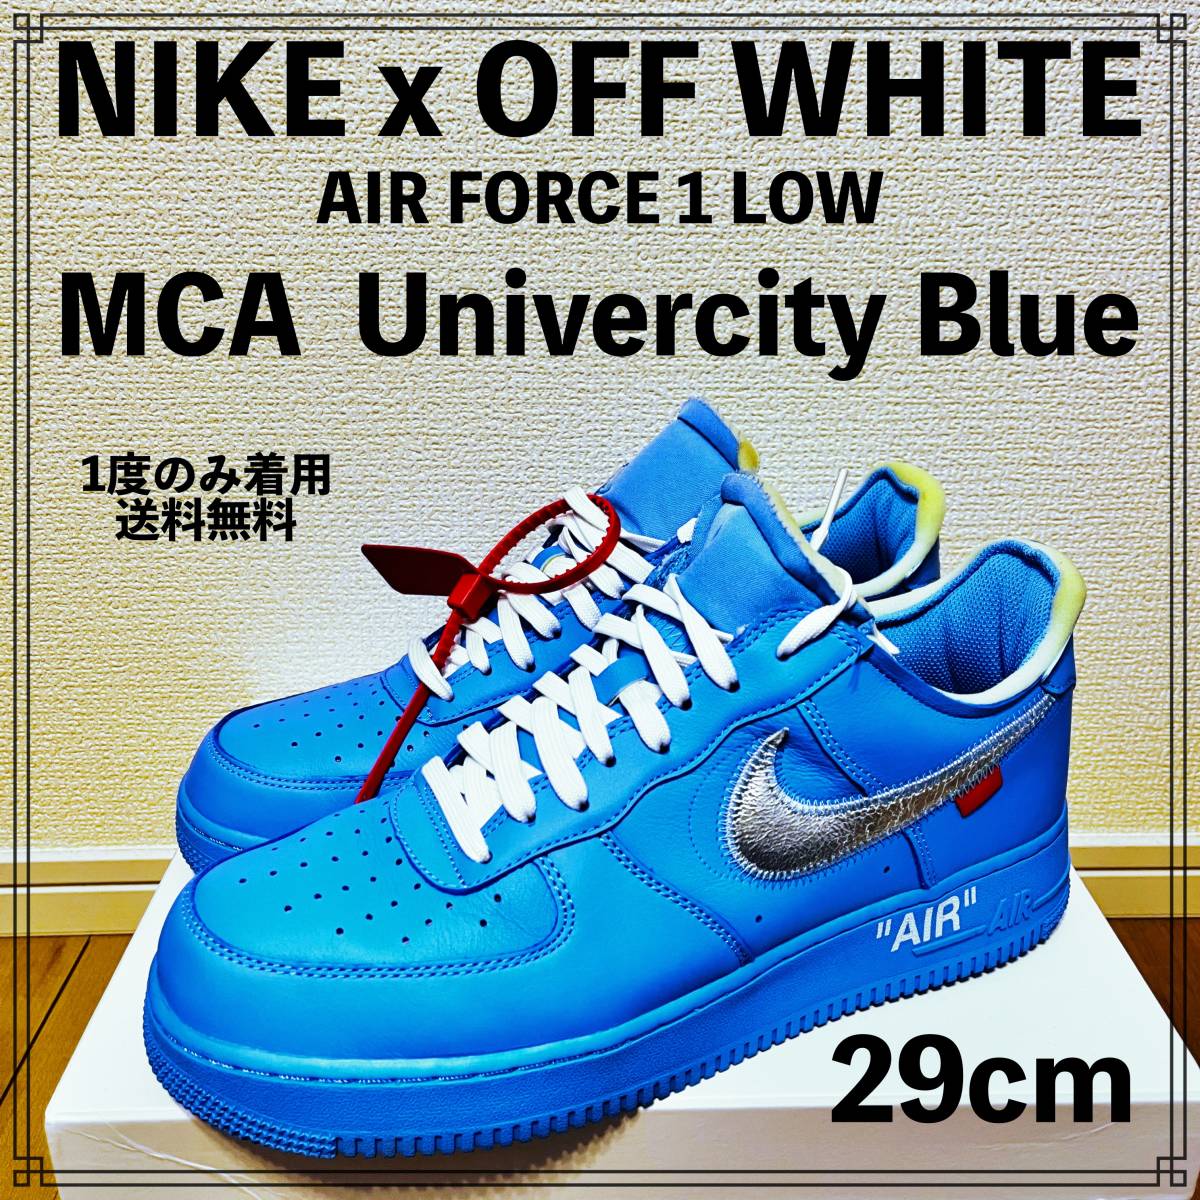 1度のみ着用】NIKE x OFF WHITE AIR FORCE 1 LOW MCA University Blue